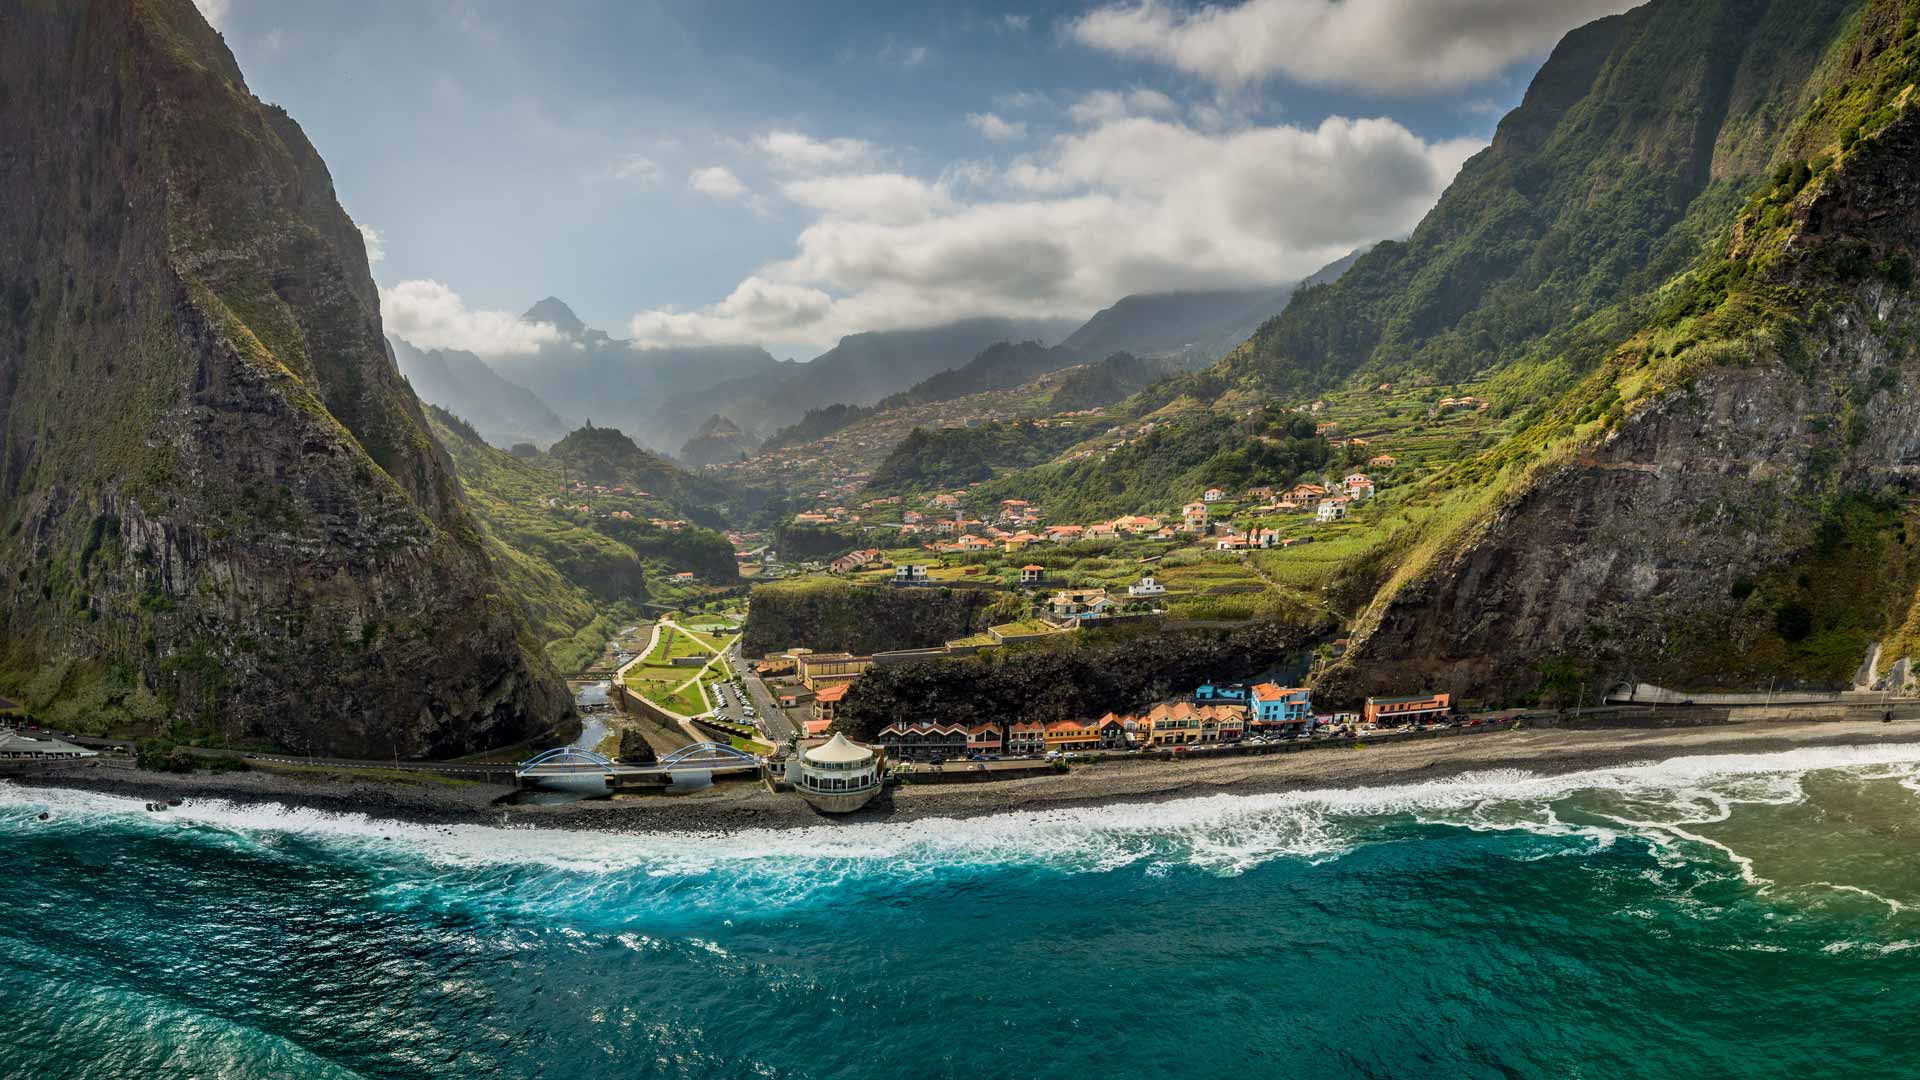 São Vicente Beach - Visit Madeira | Madeira Islands Tourism Board official  website